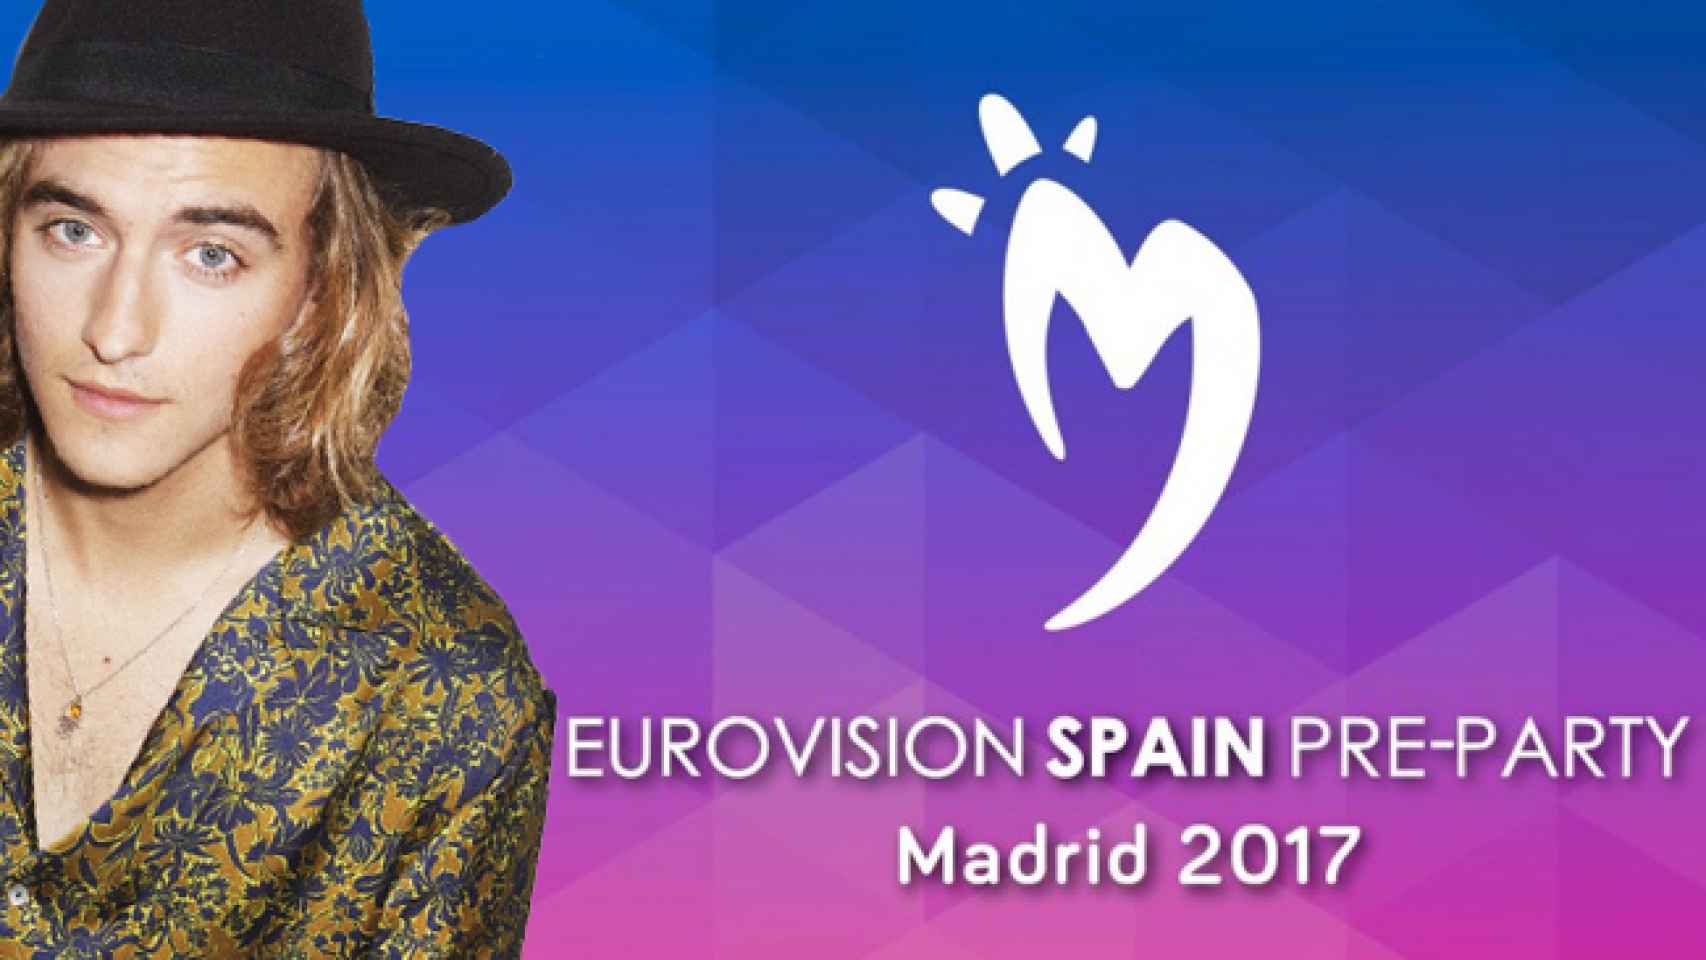 Estos son los países que actuarán en Madrid junto a Manel en la Pre-Party de Eurovisión